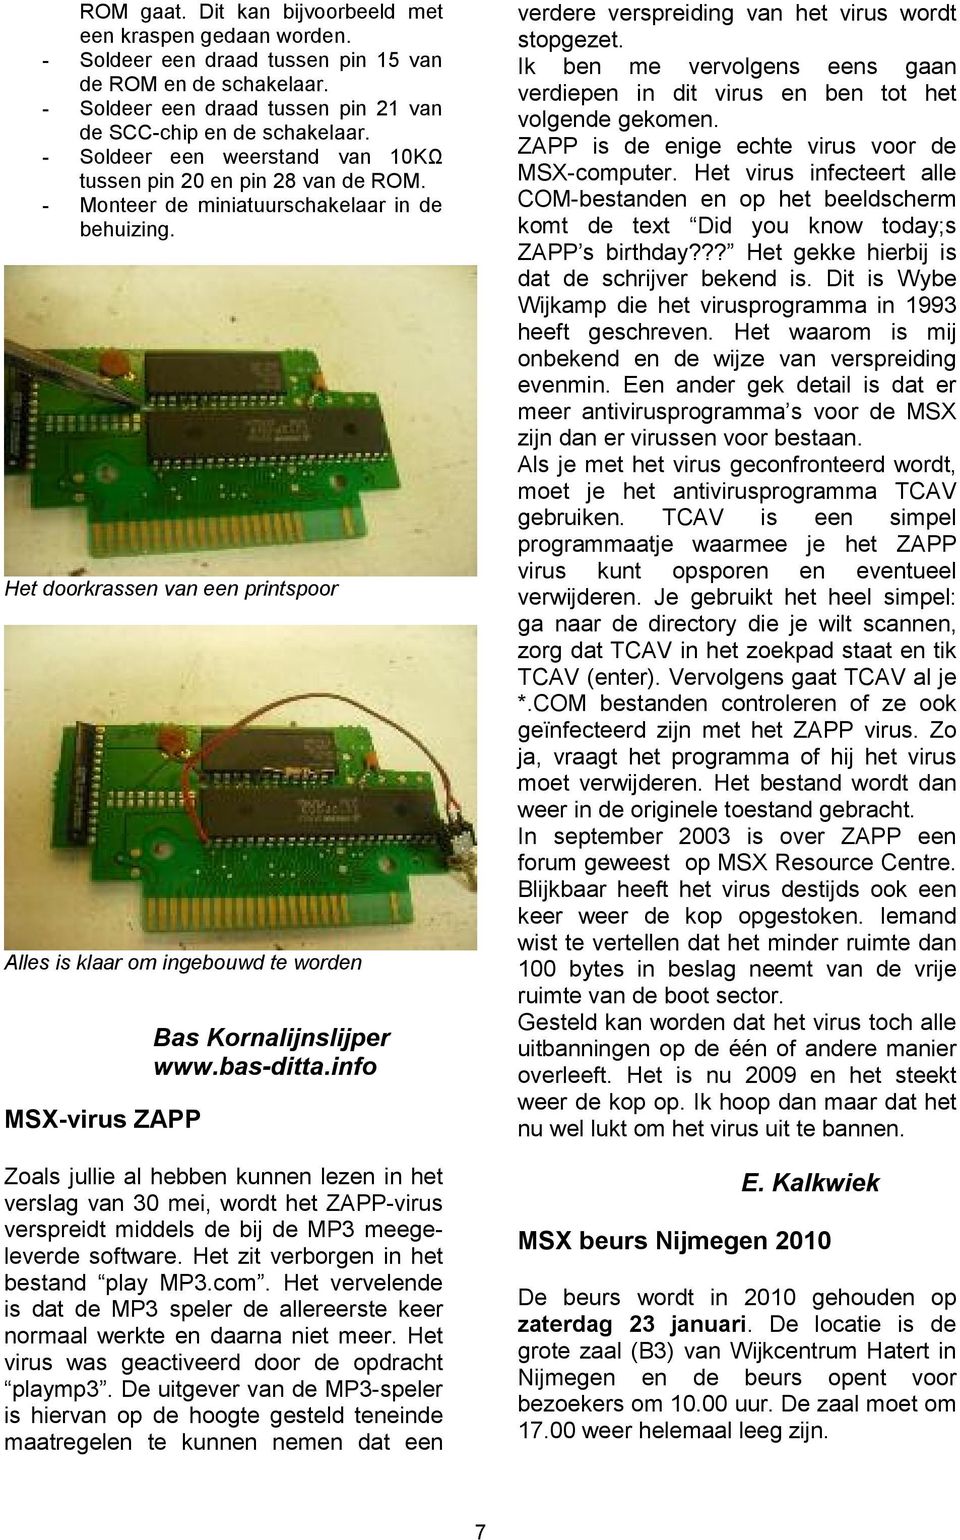 Het doorkrassen van een printspoor Alles is klaar om ingebouwd te worden MSX-virus ZAPP Bas Kornalijnslijper www.bas-ditta.